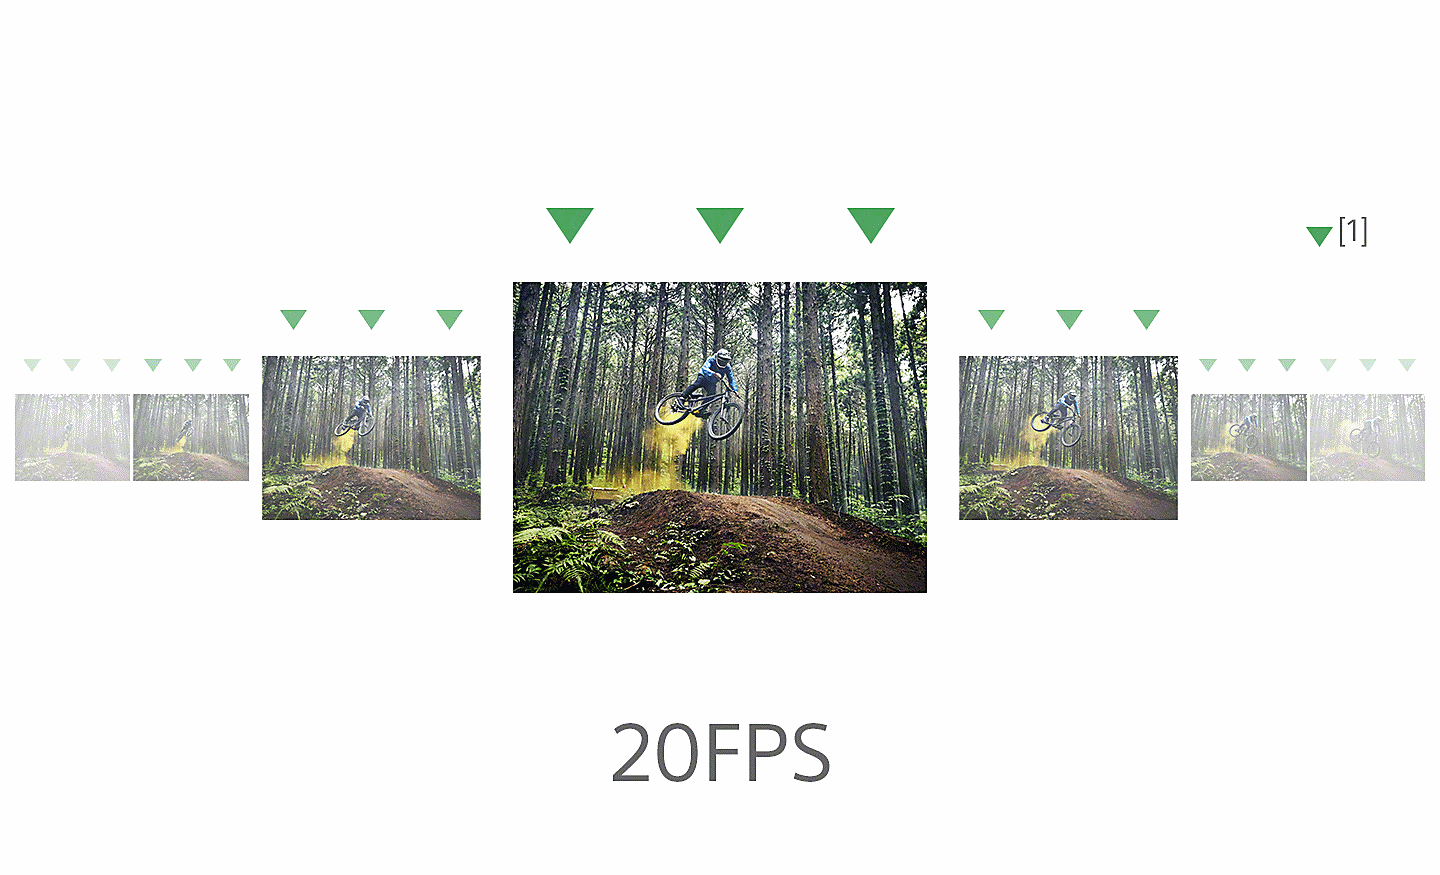 Nhiều khung hình cho thấy một người đi xe đạp leo núi đang cho xe nhảy trên con đường mòn trong rừng